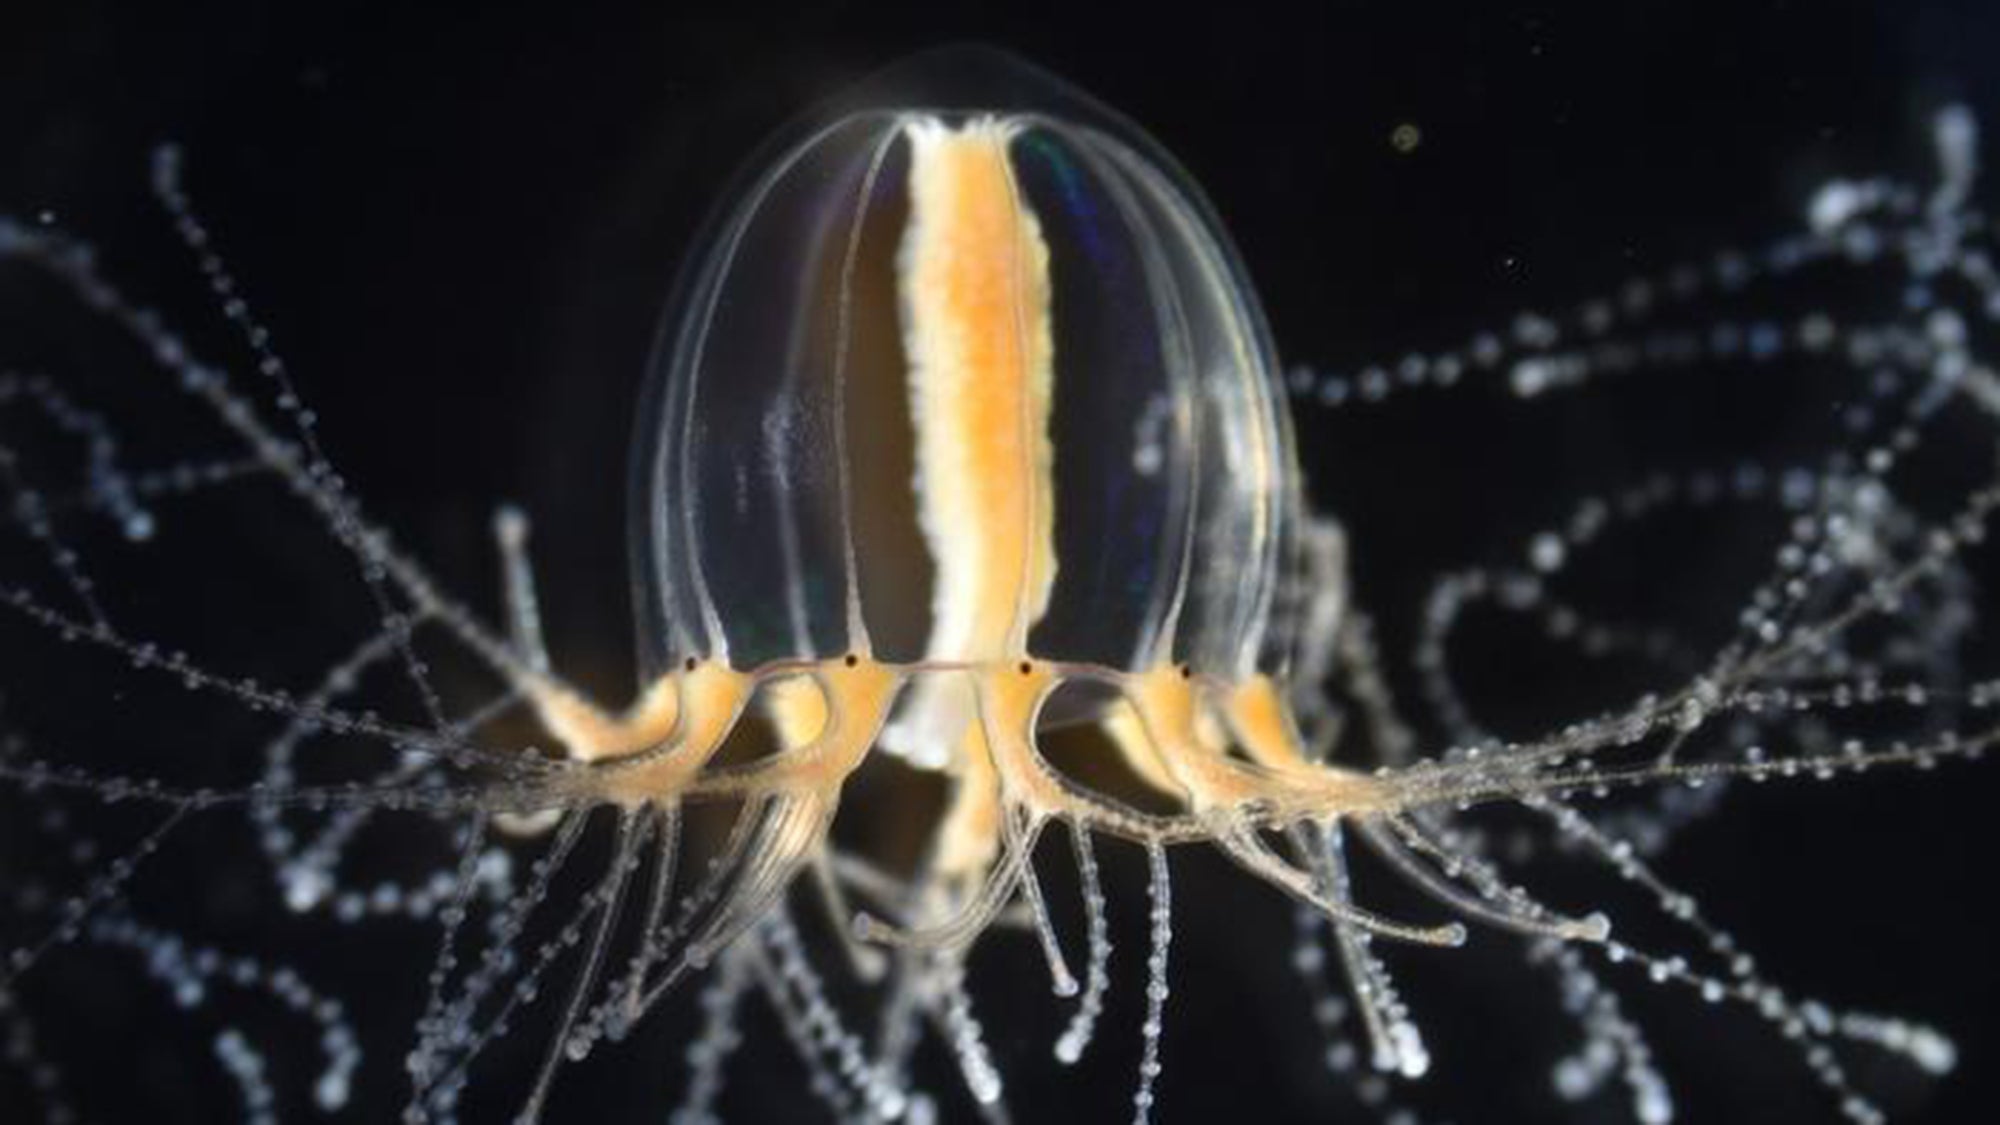 Estas medusas del tamaño de una uña pueden regenerar tentáculos, pero ¿cómo?